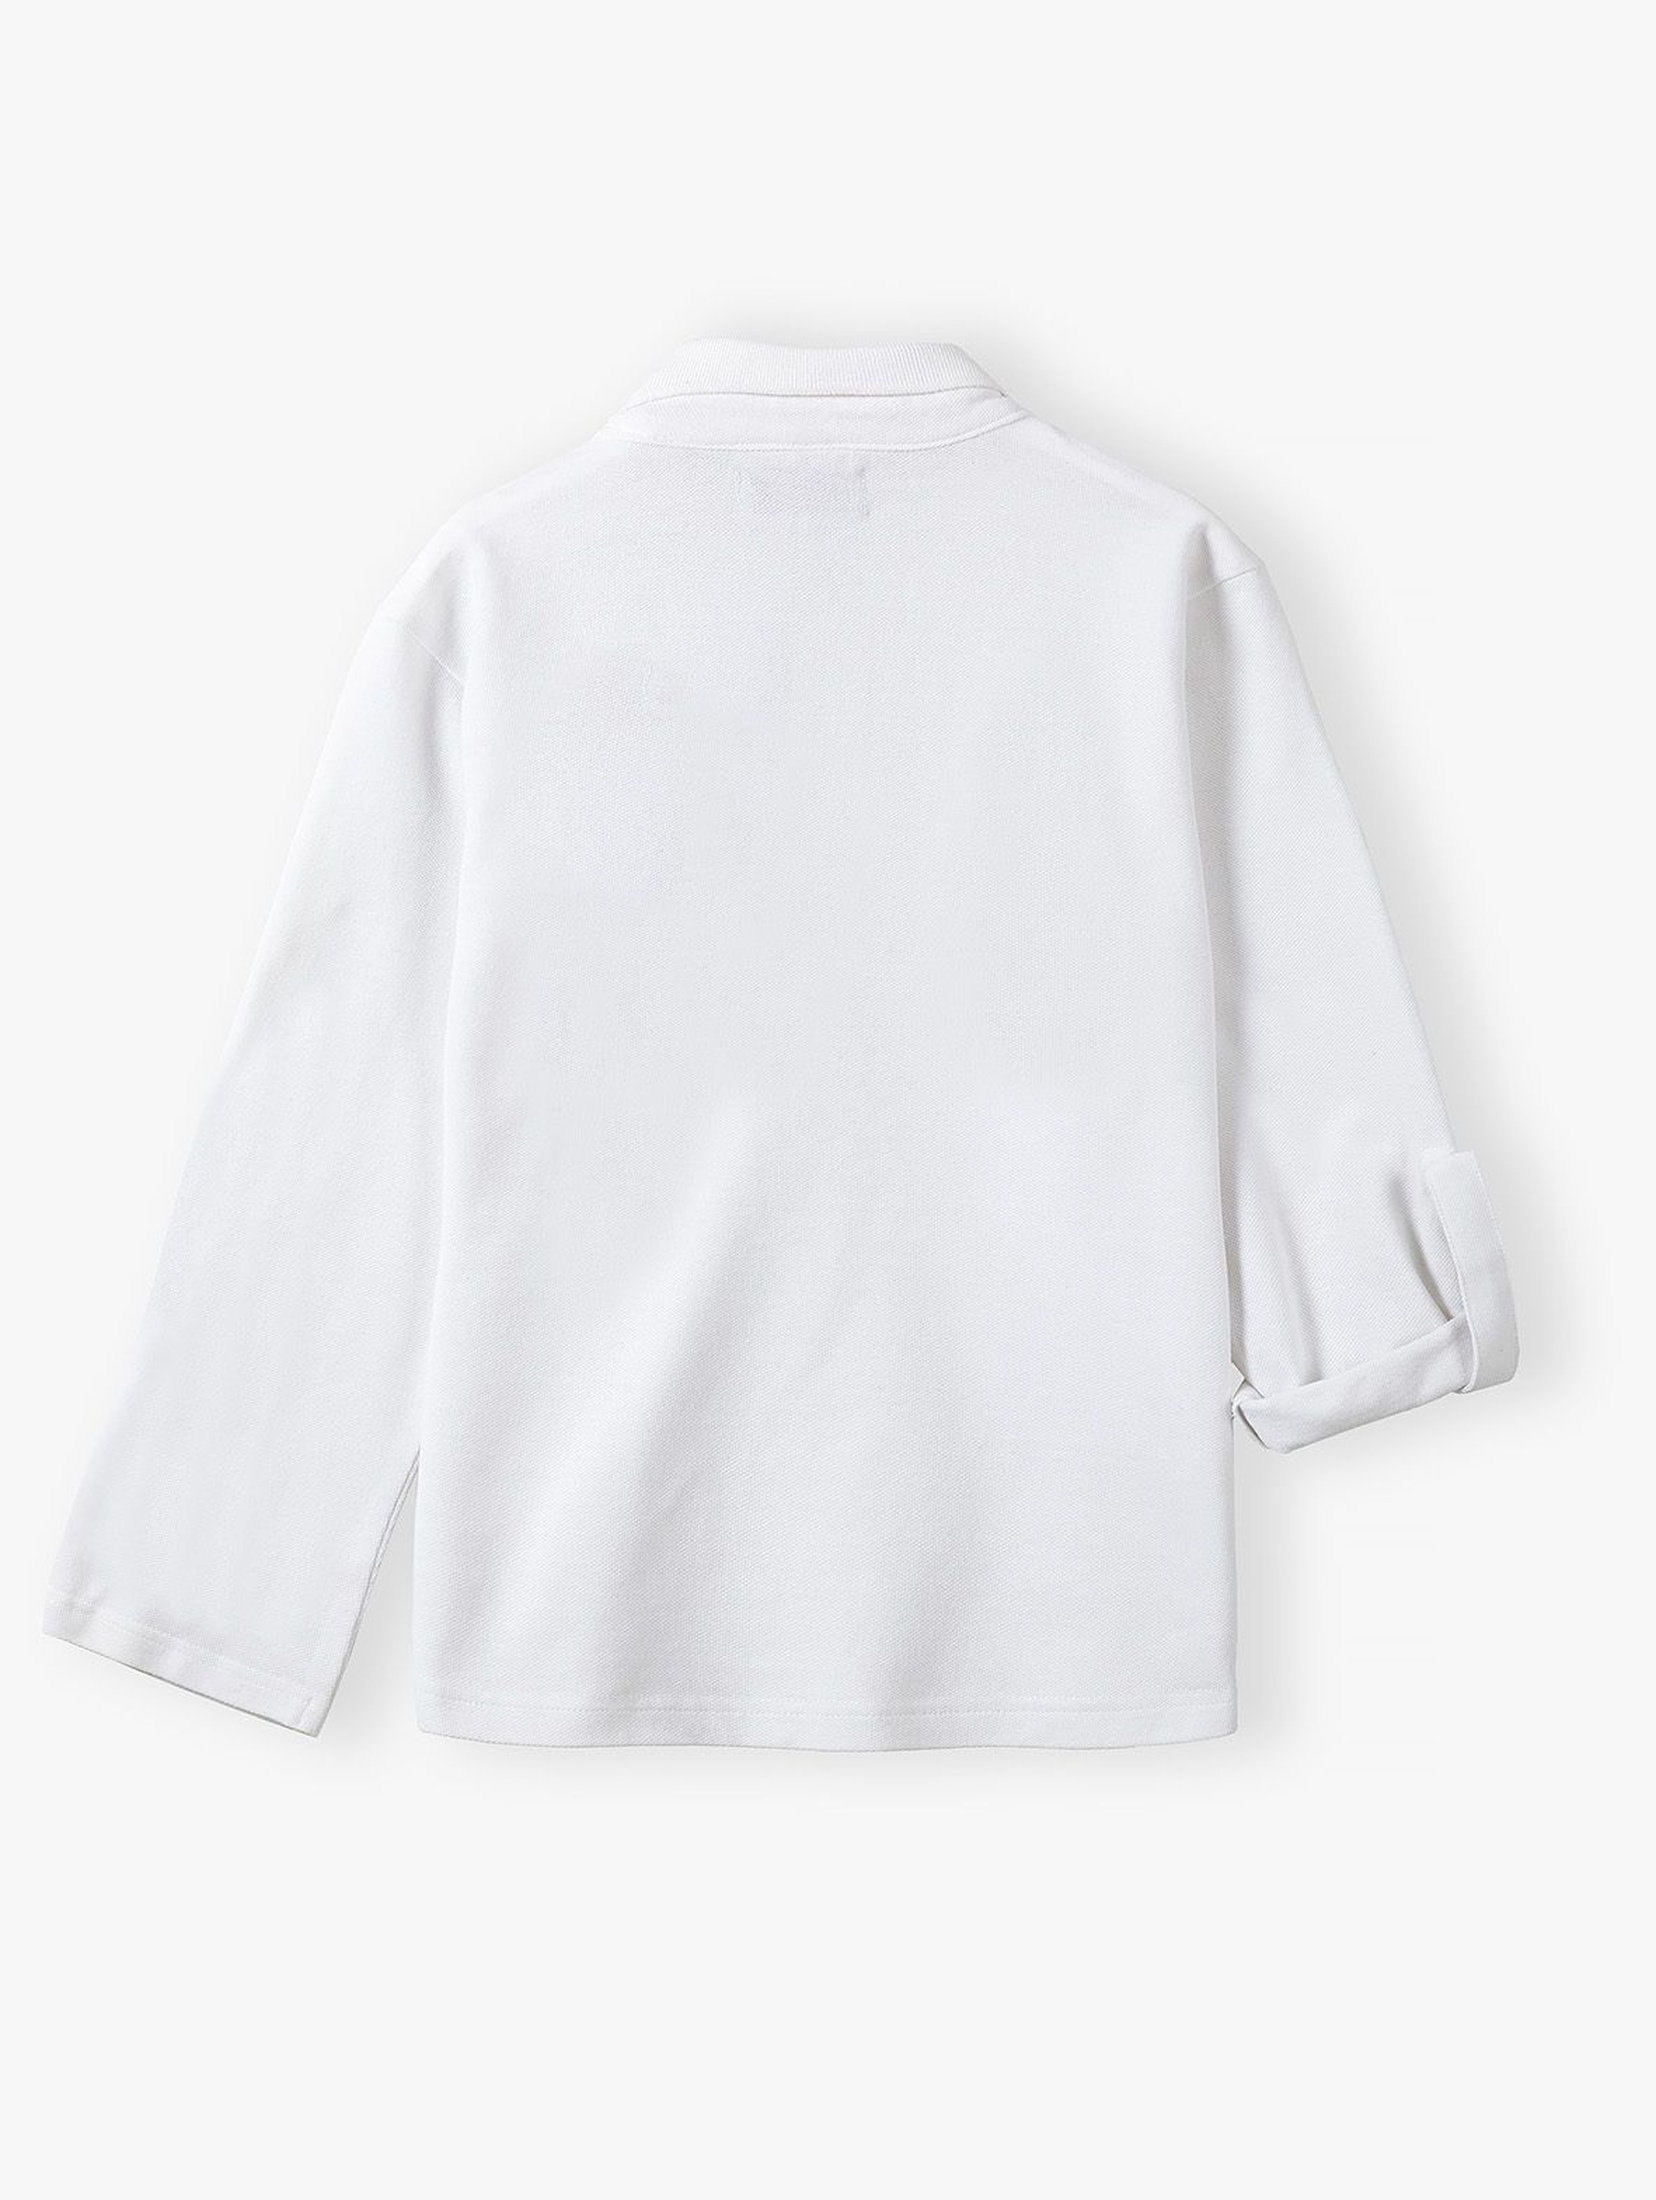 Biała bluzka polo bawełniana z długim rękawem